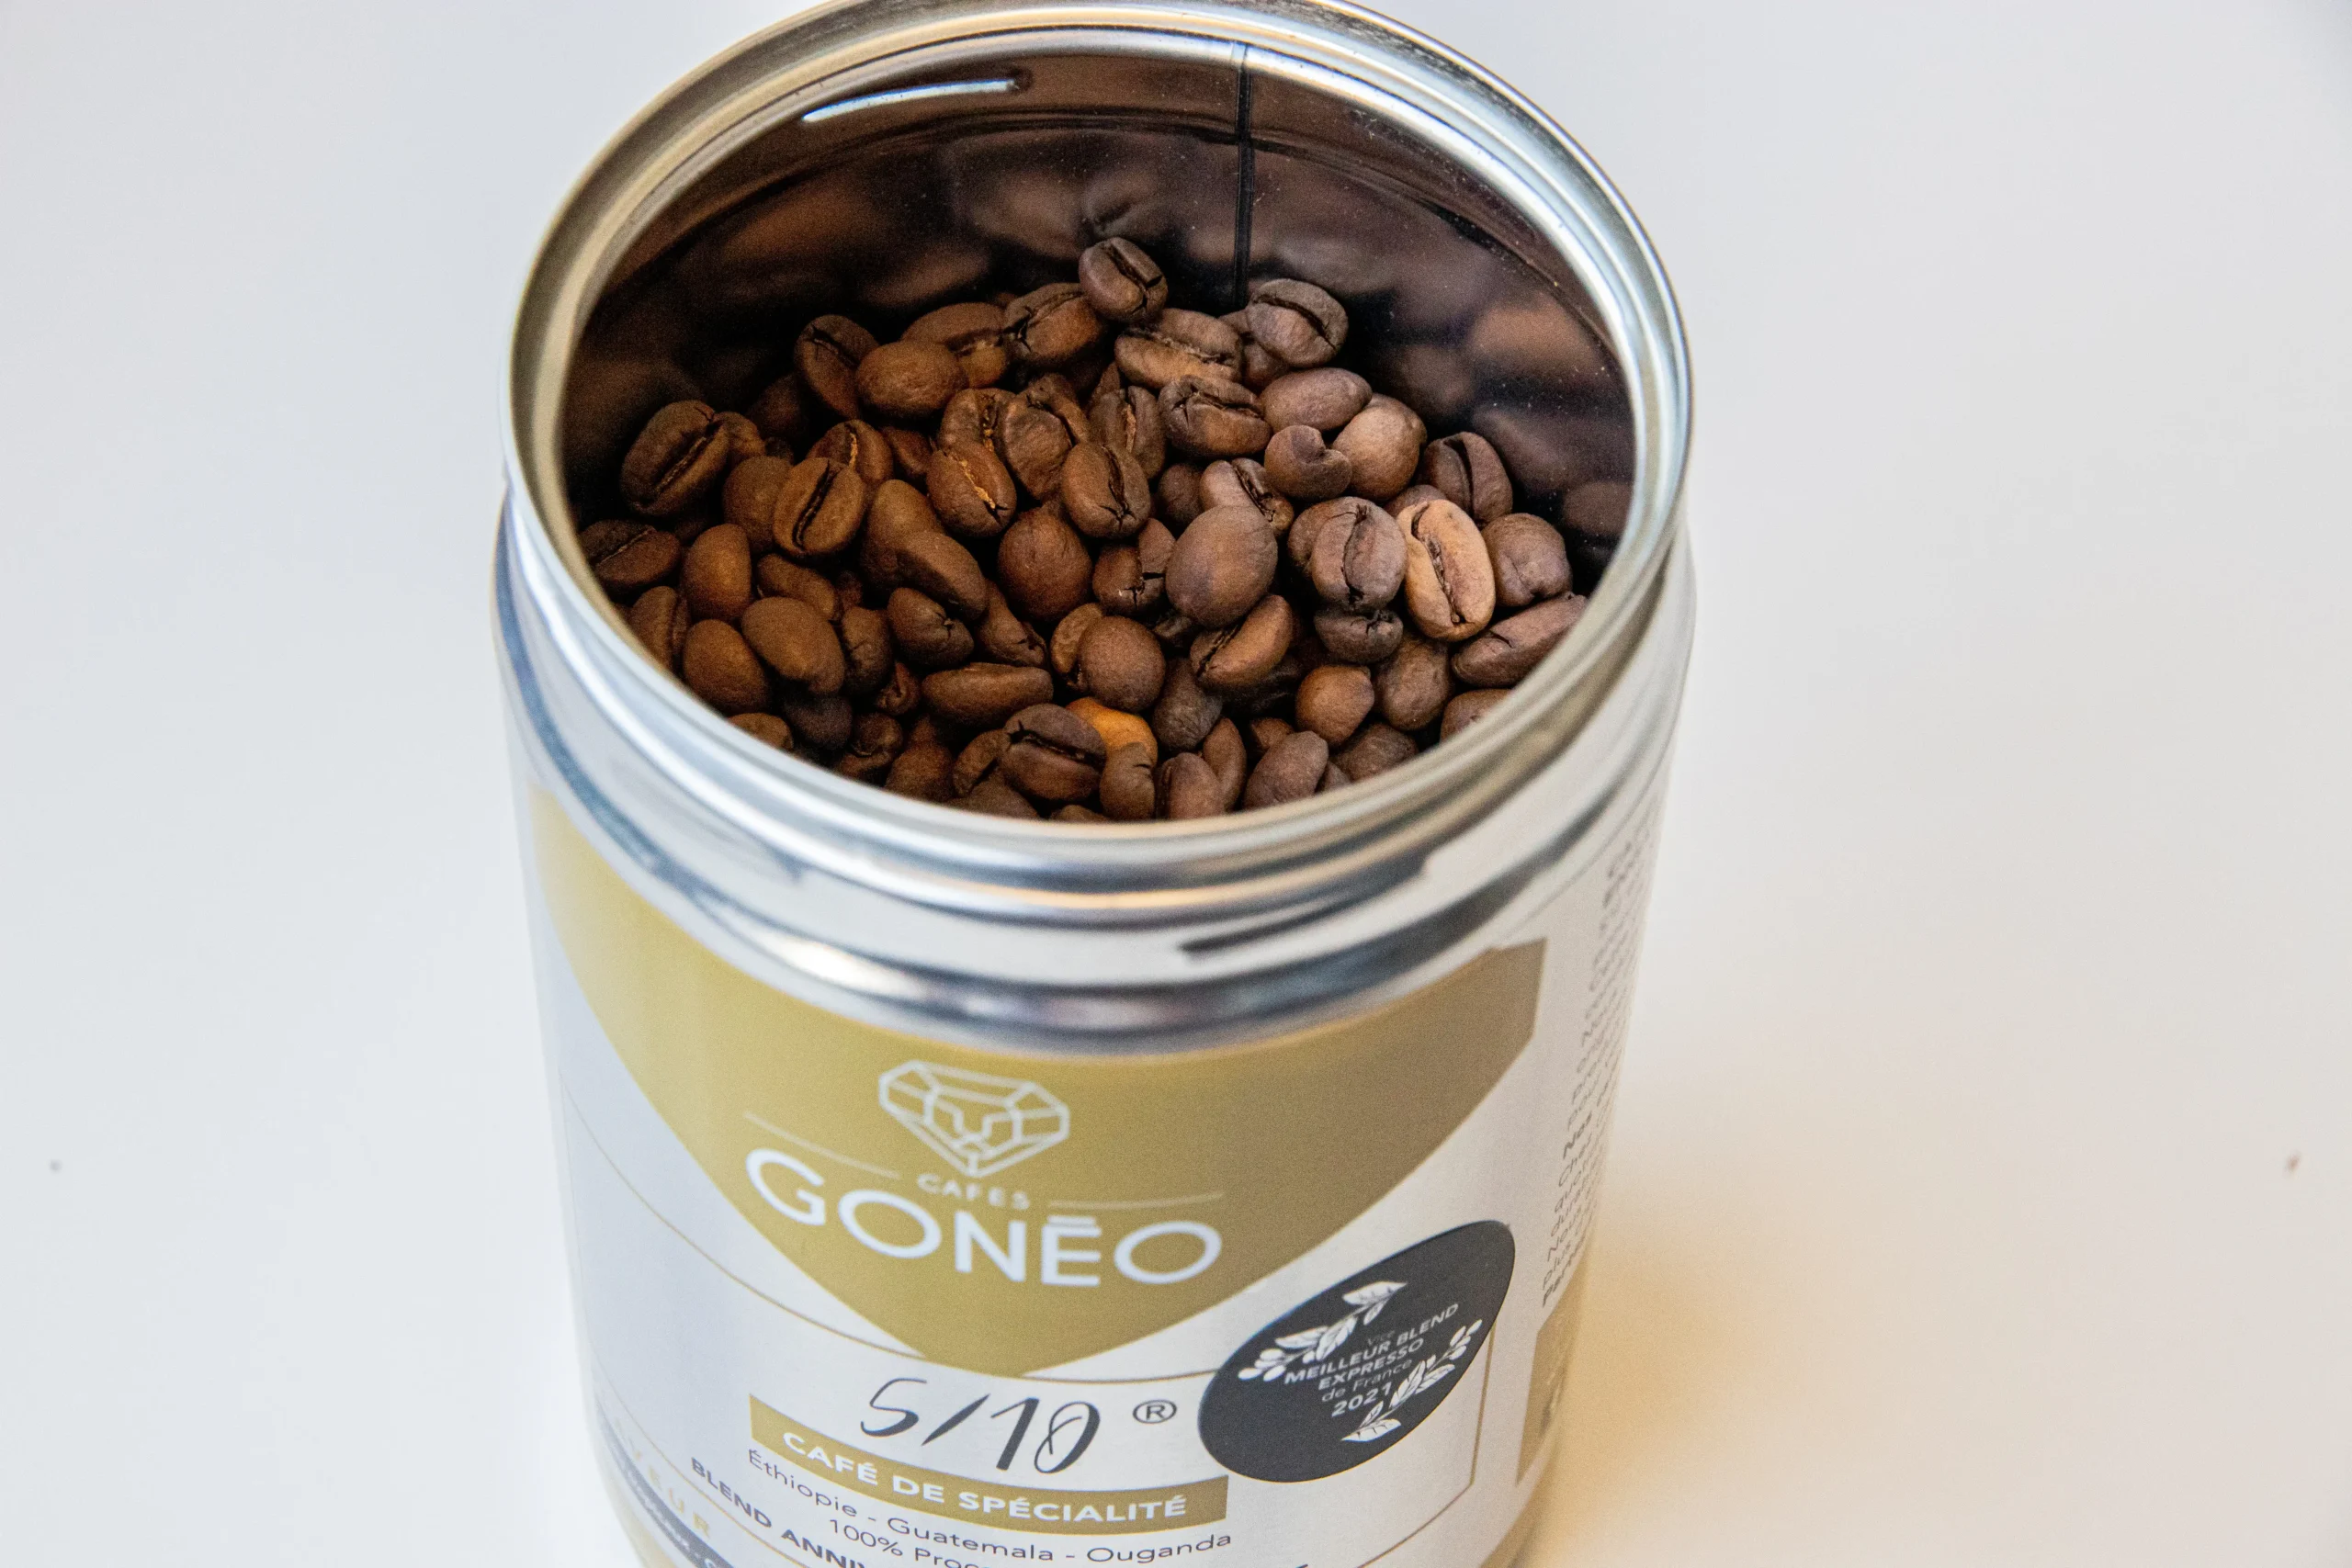 Boîte métallique ouverte du café-5_10, café de spécialité, avec des grains de cafés à l'intérieur